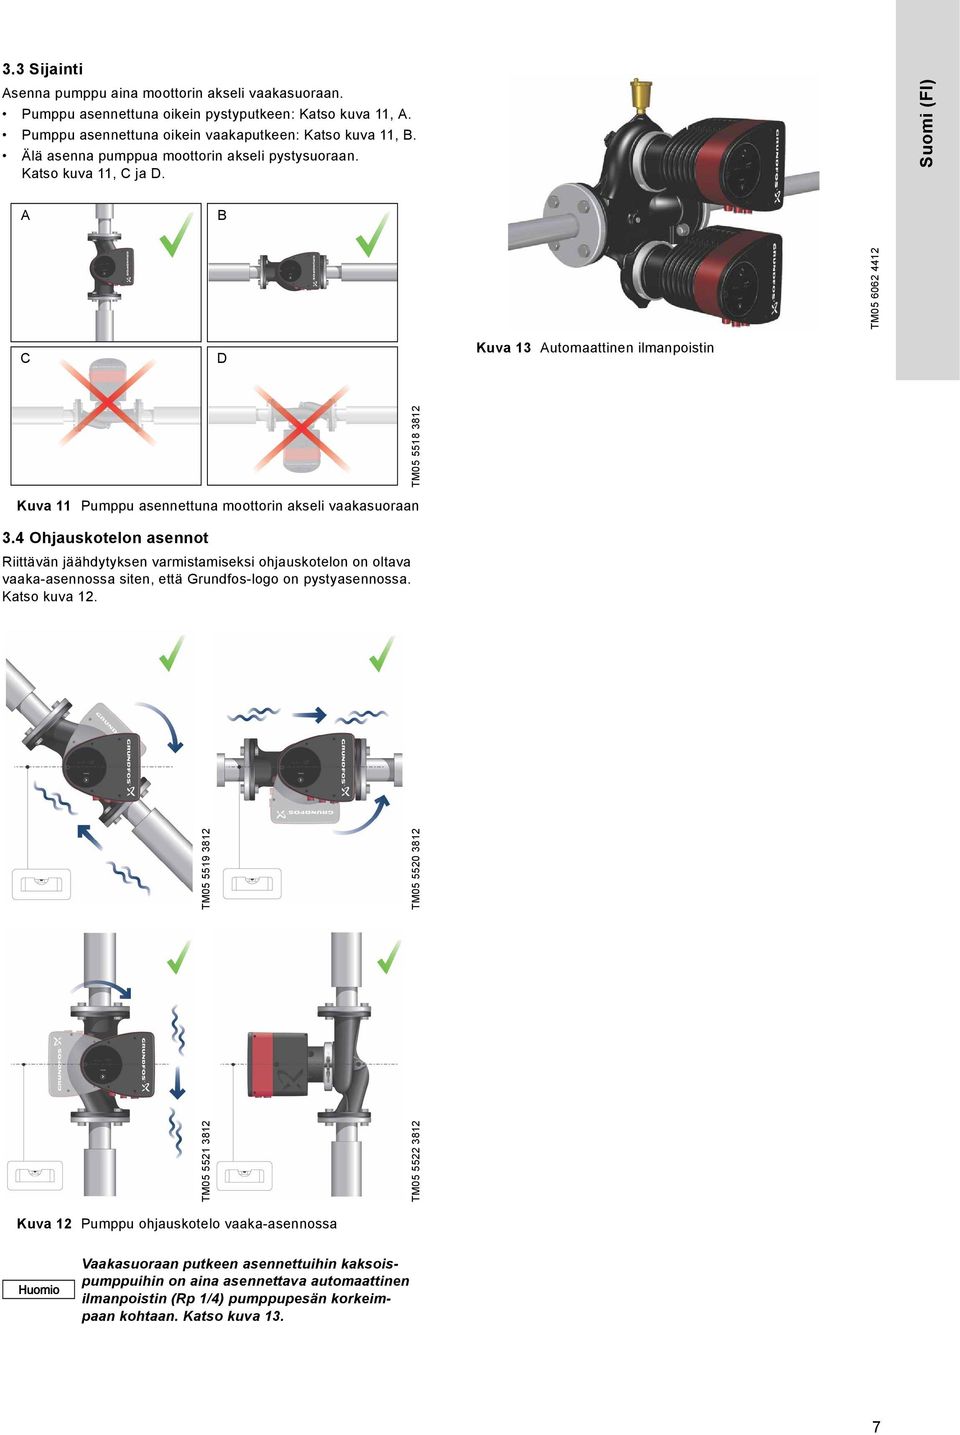 4 Ohjauskotelon asennot Riittävän jäähdytyksen varmistamiseksi ohjauskotelon on oltava vaaka-asennossa siten, että Grundfos-logo on pystyasennossa. Katso kuva 12.